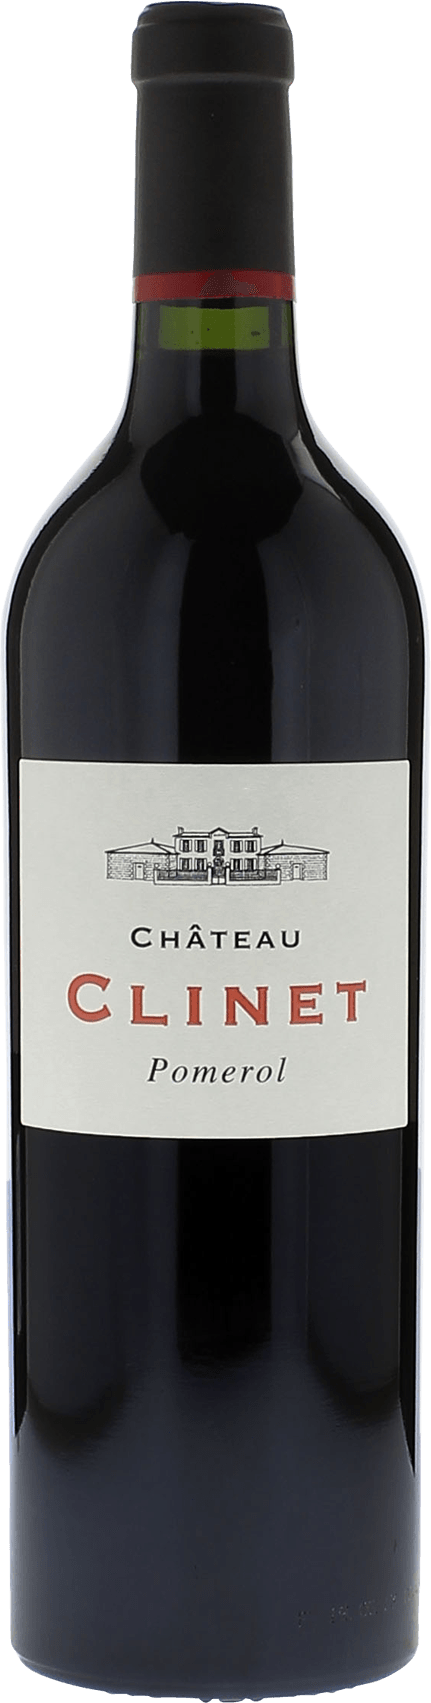 Clinet 2014  Pomerol, Bordeaux rouge